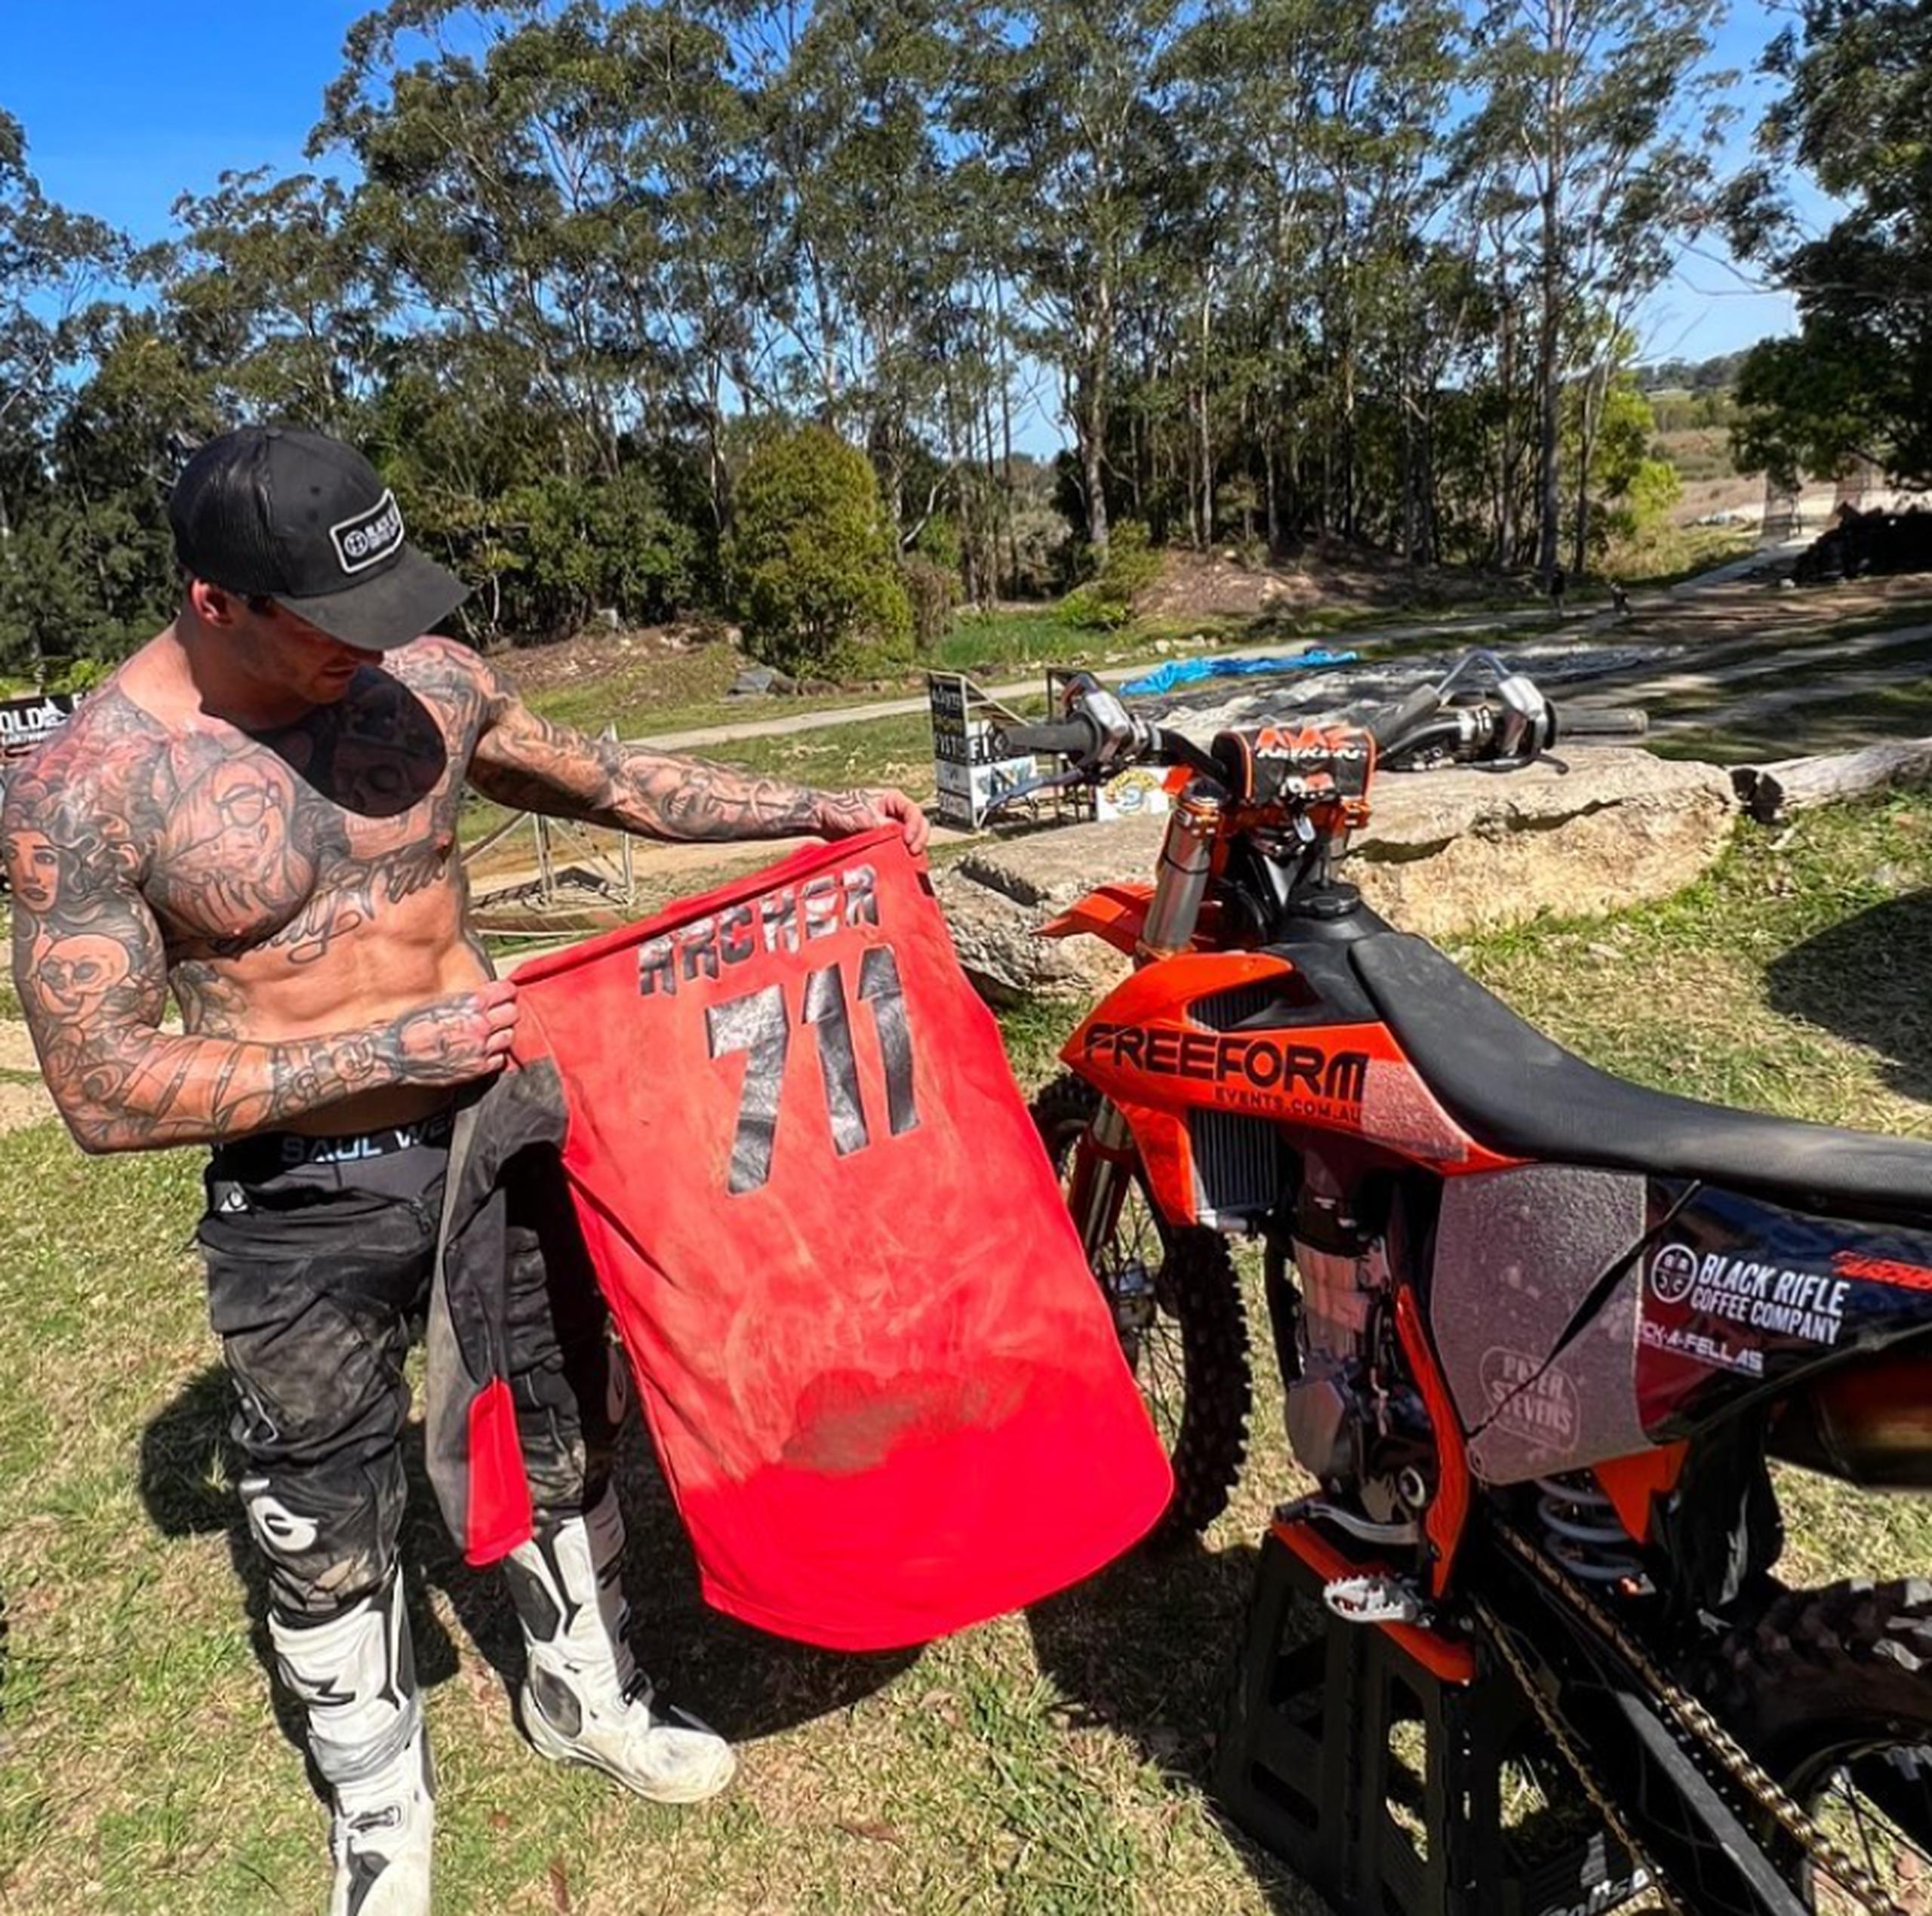 Jayden Archer se convirtió en el primero en realizar el triple backflip en motocross en una competencia en noviembre de 2022, durante los Nitro World Games en Brisbane, Australia.